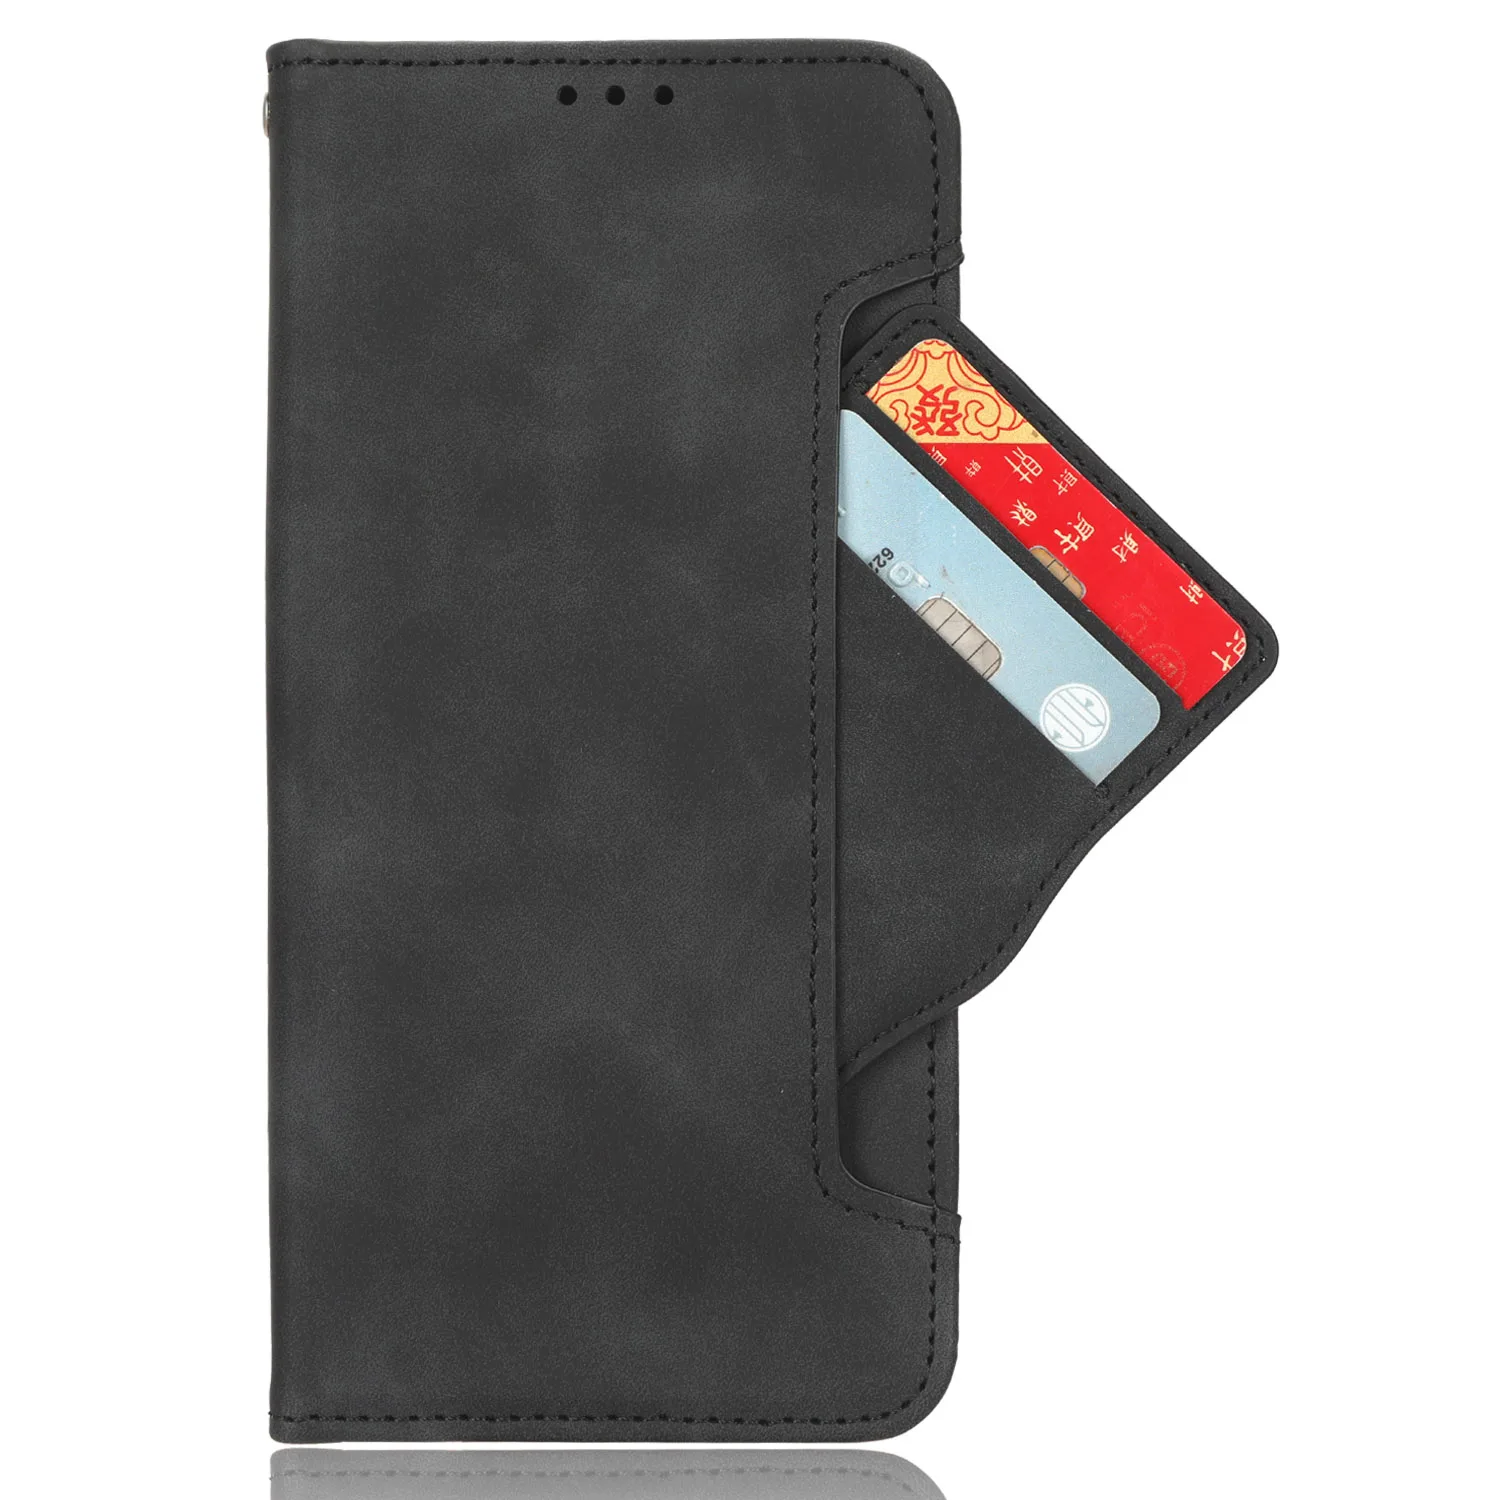 Для Motorola Moto G Stylus 5G 2023 Кожаный бумажник Премиум-класса с откидной крышкой со слотом для нескольких карт Для Moto GStylus 5G 2023 Чехол для телефона - 1